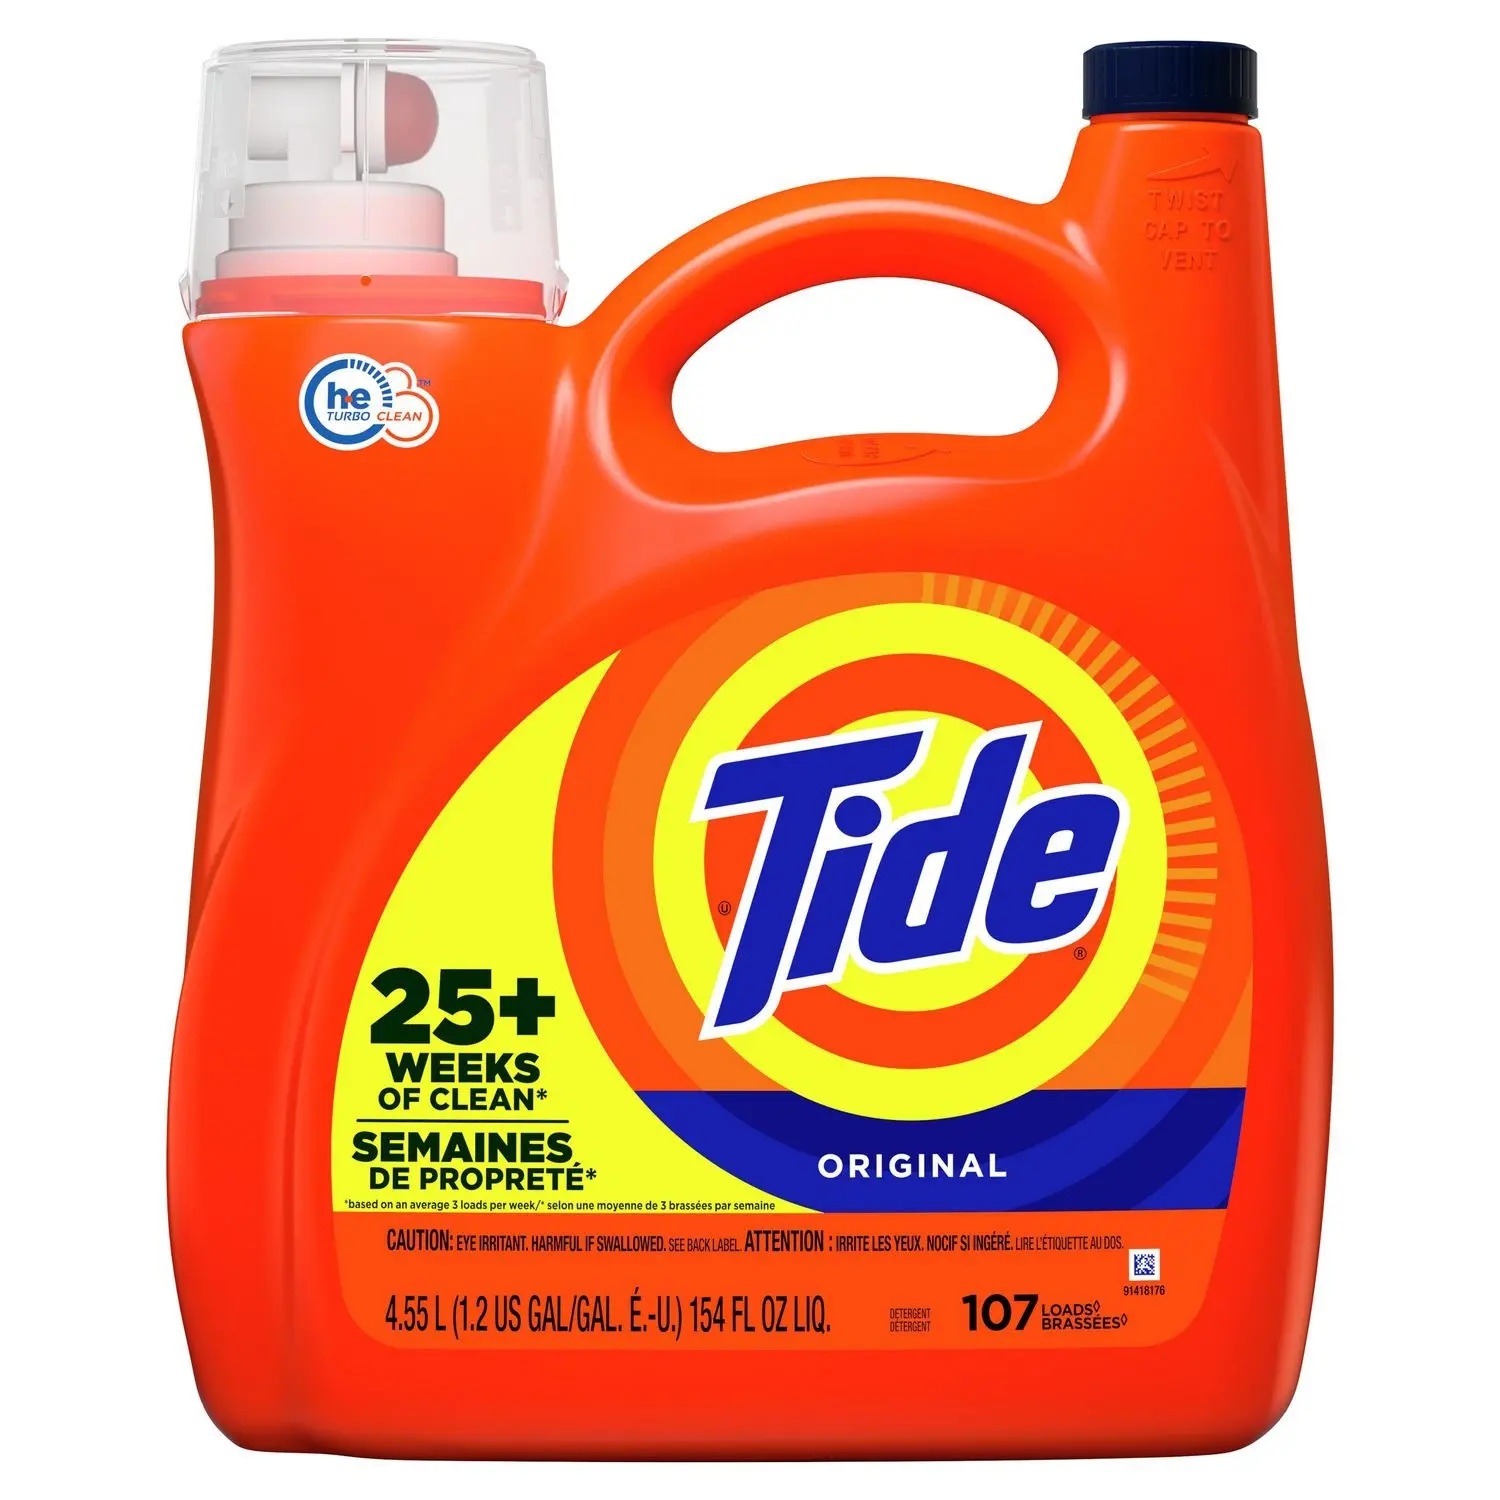 タイドランドリー洗剤液体石鹸、高効率 (He) 、オリジナルの香り、64負荷